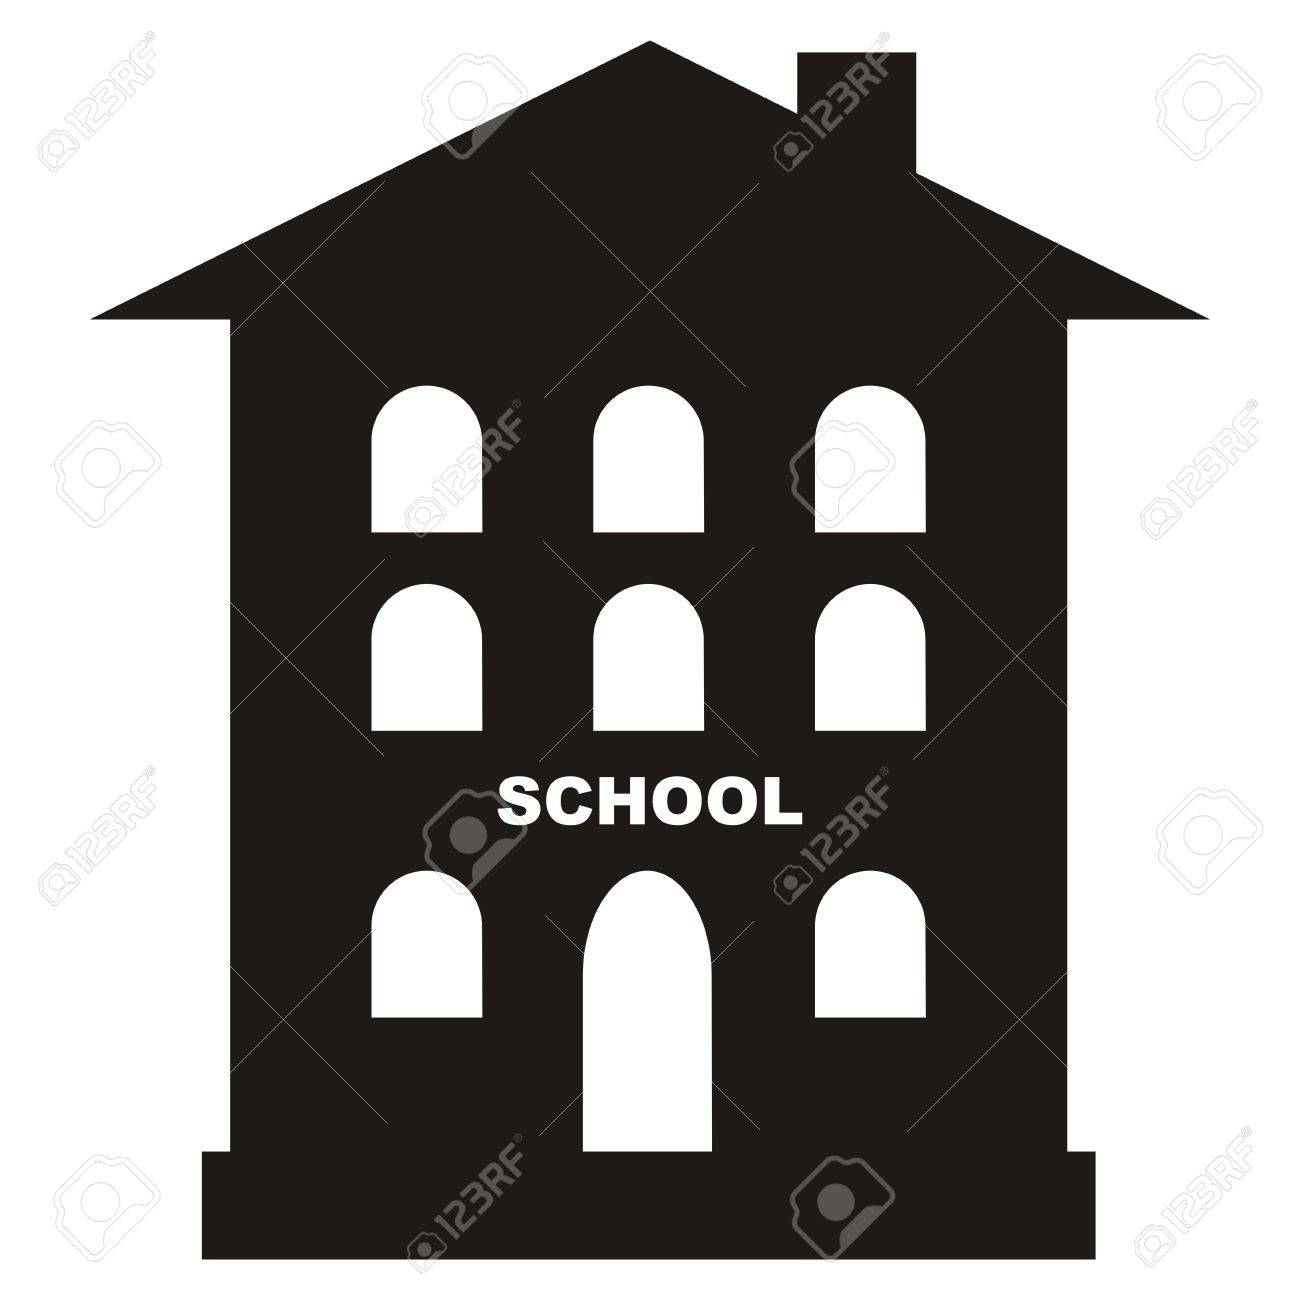 school, college, academy, schoolhouse icon